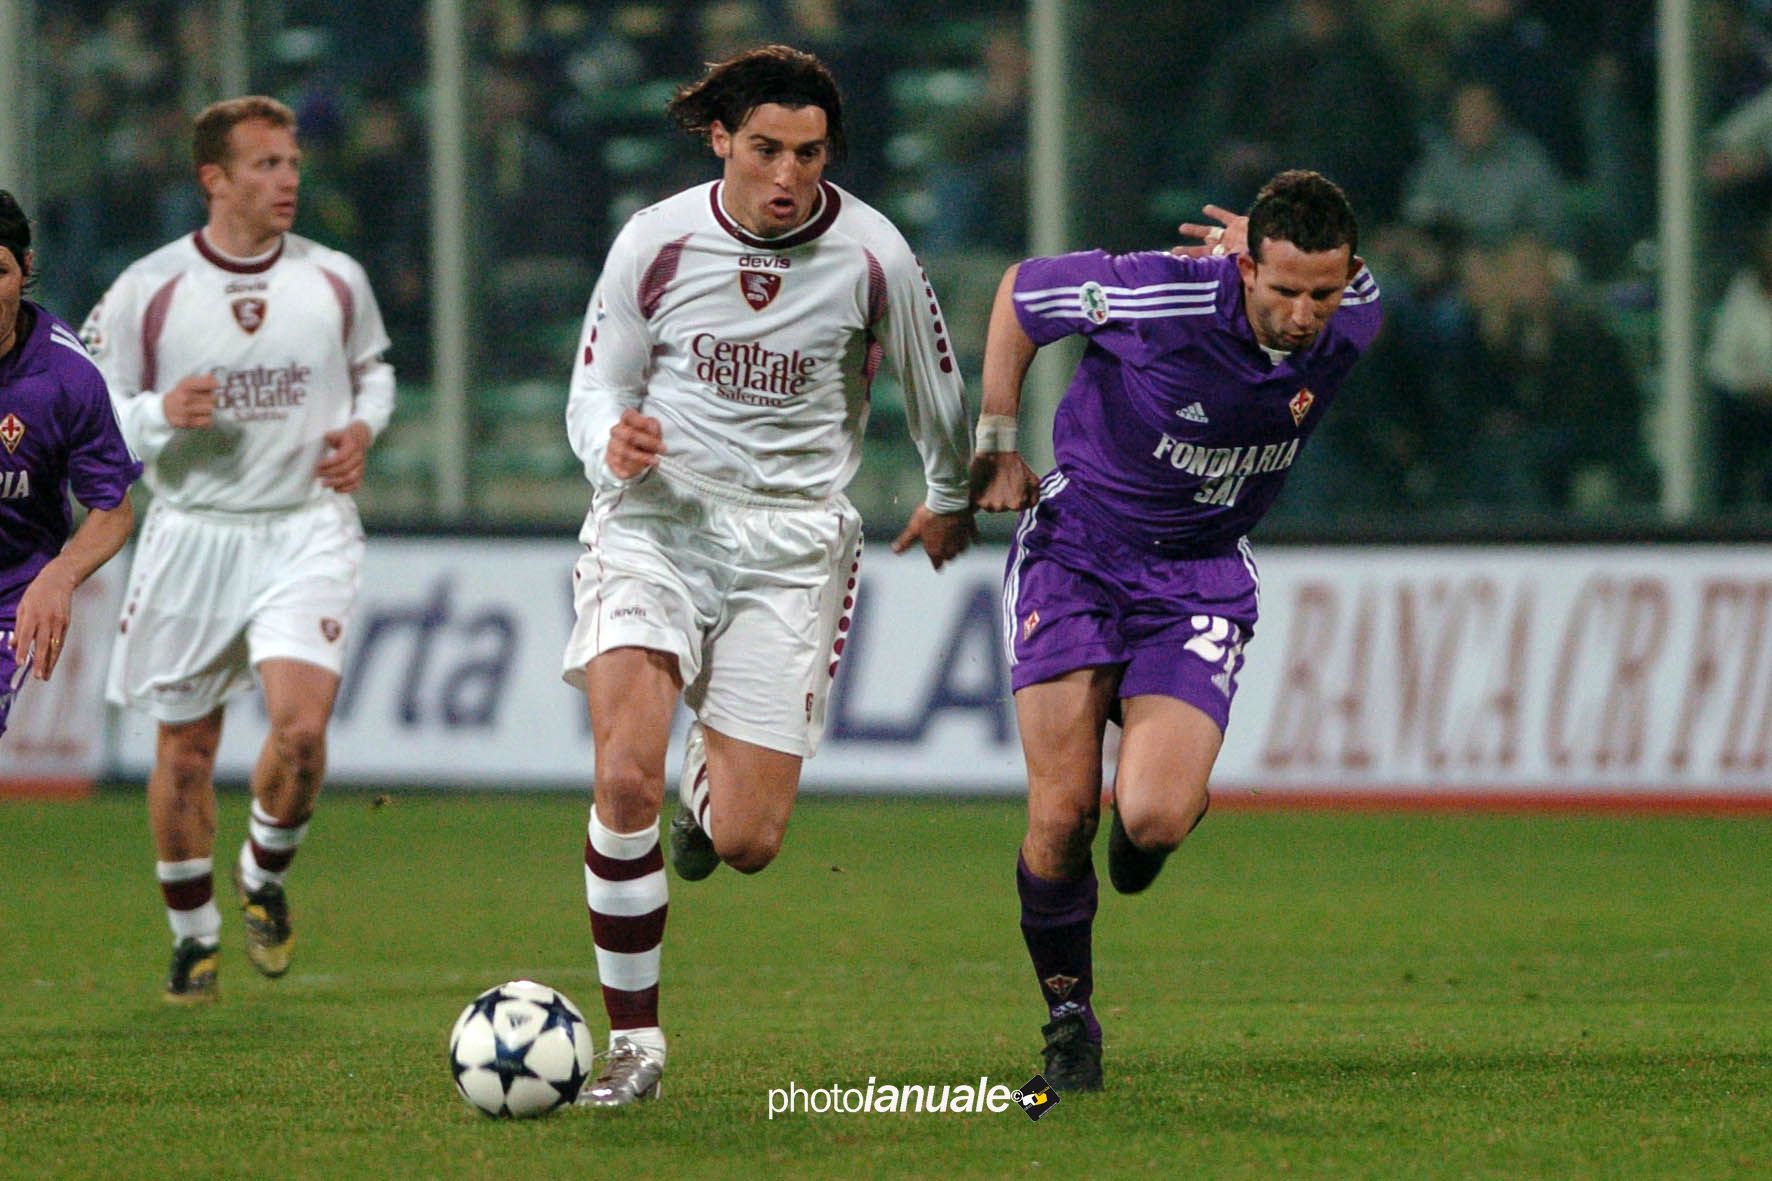 Fiorentina – Salernitana: Match Preview